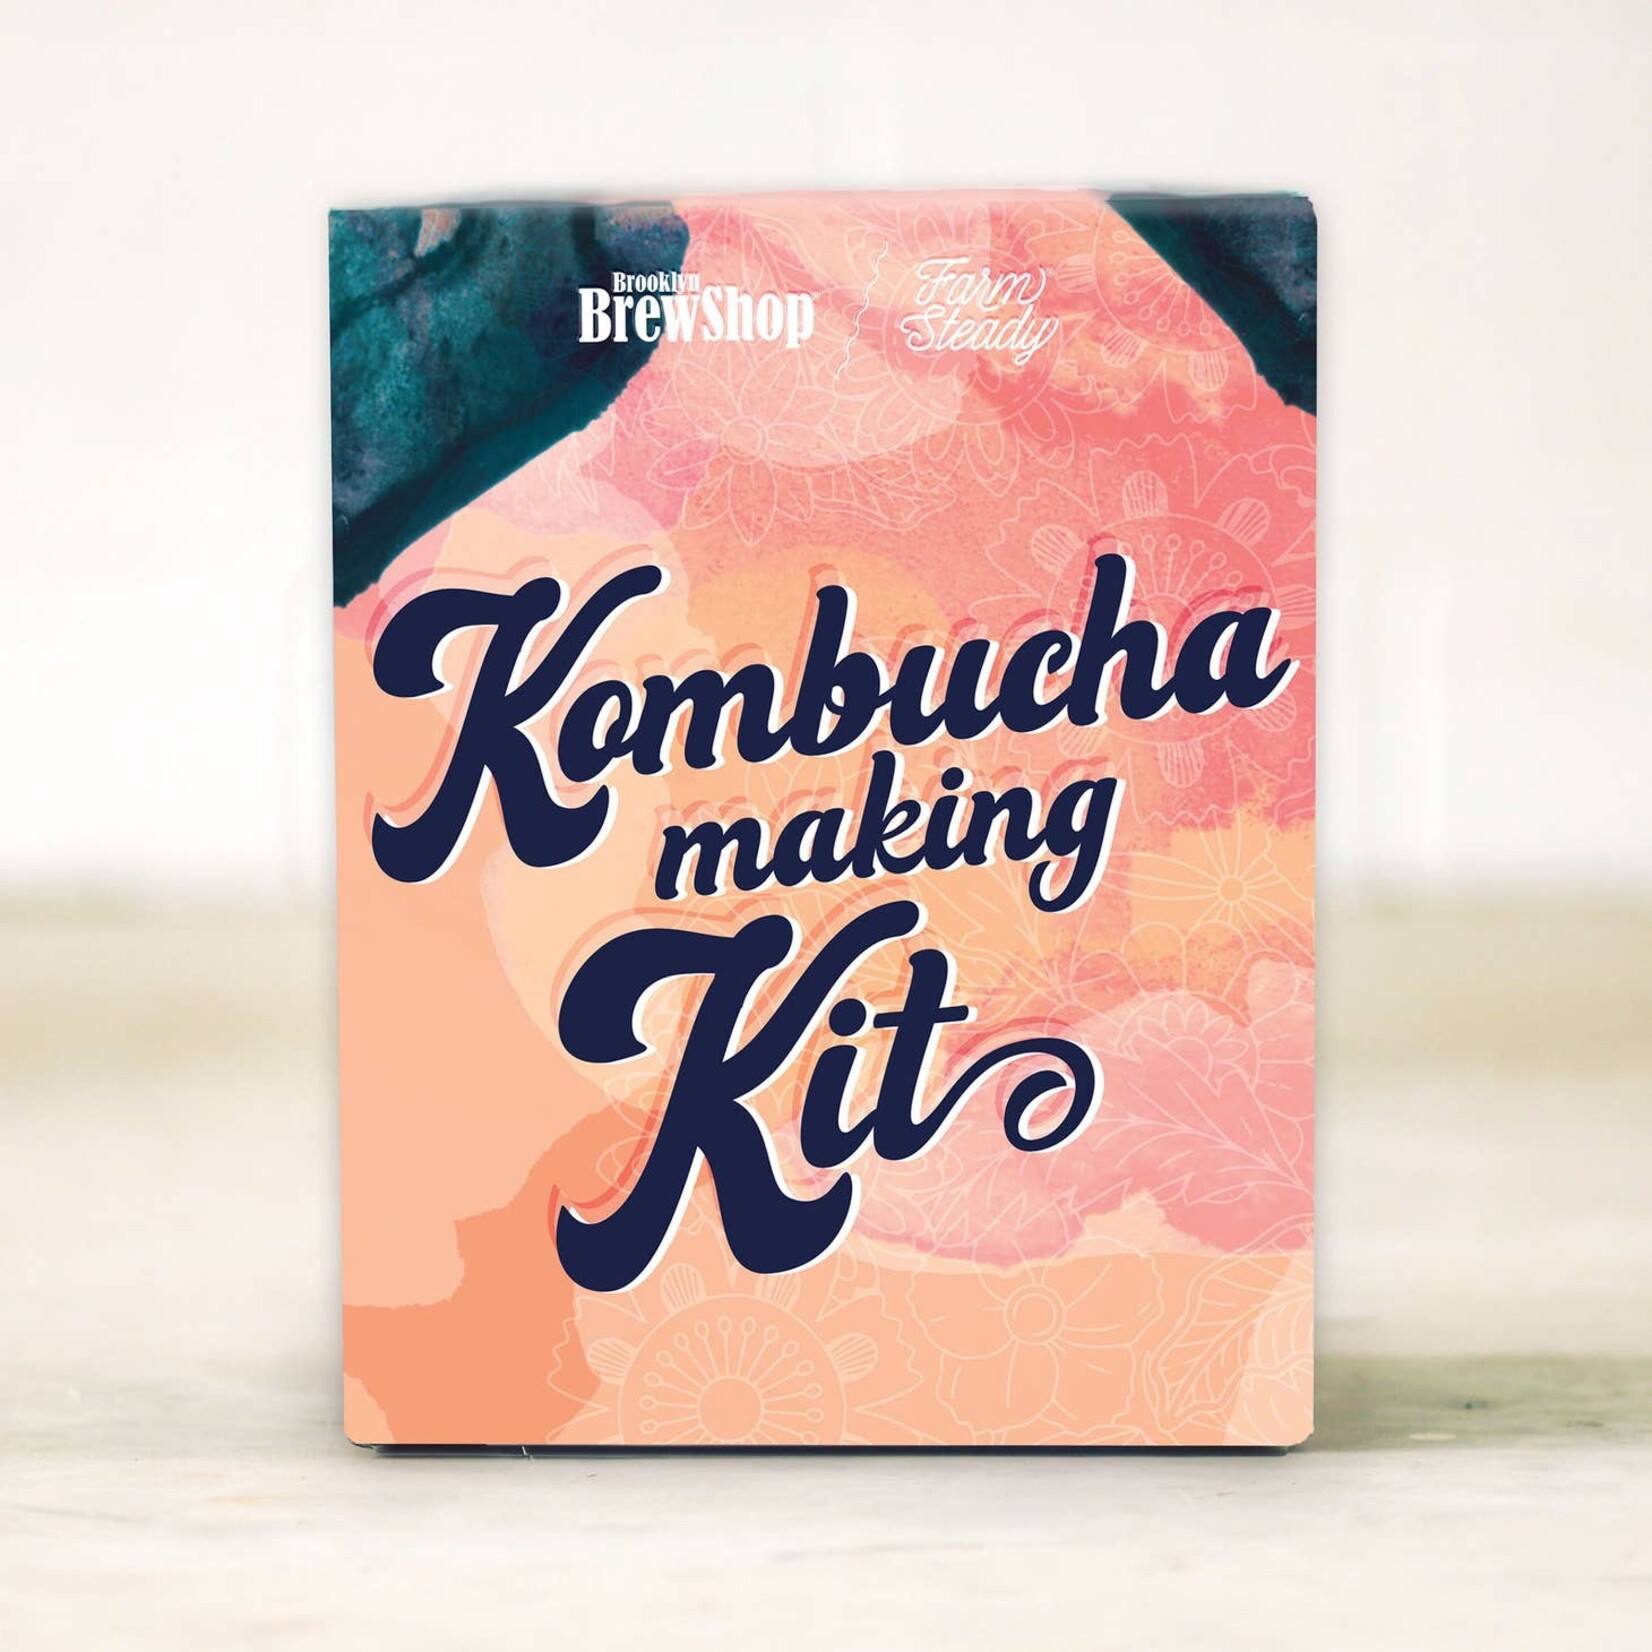 Brooklyn Brew Shop Kombucha Making Kit